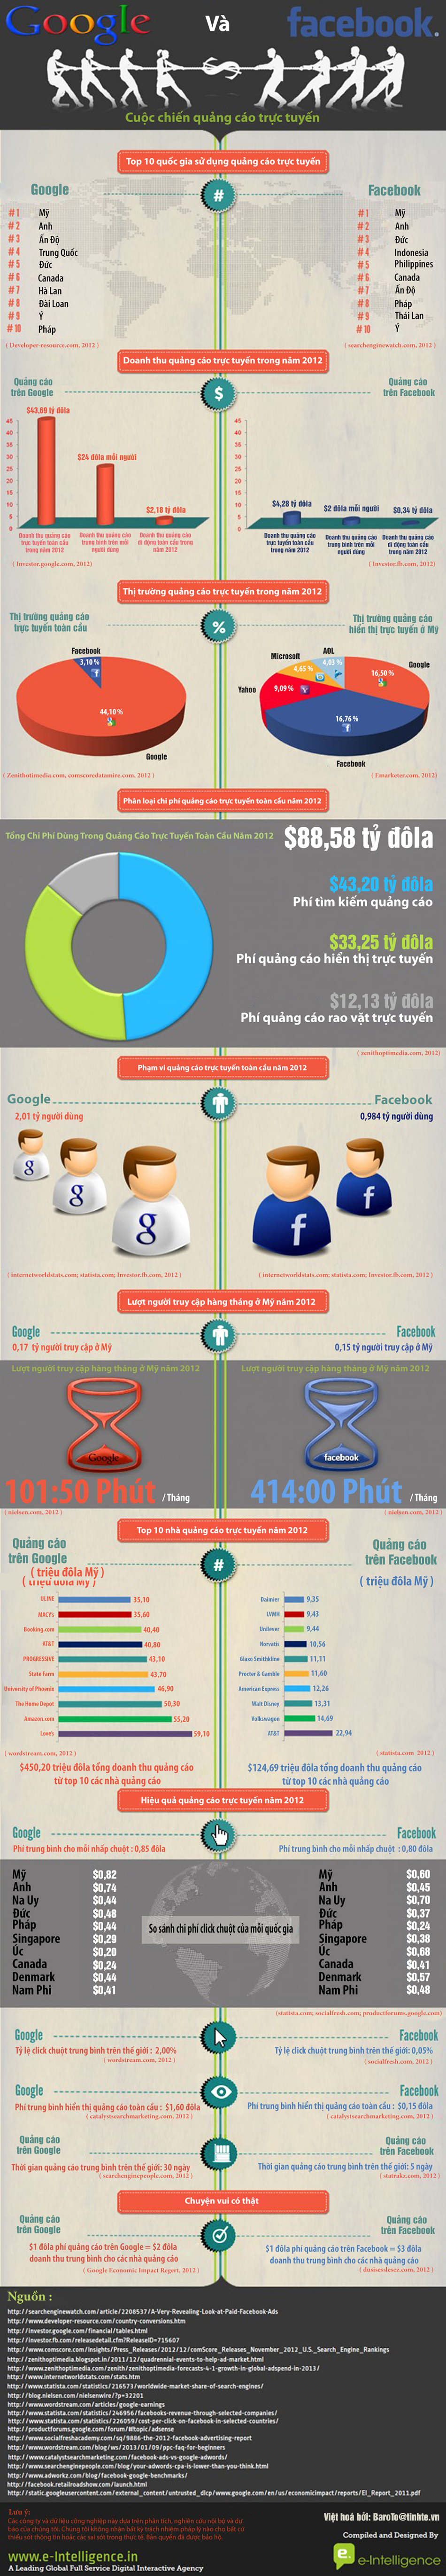 Google-vs-Facebook.jpg